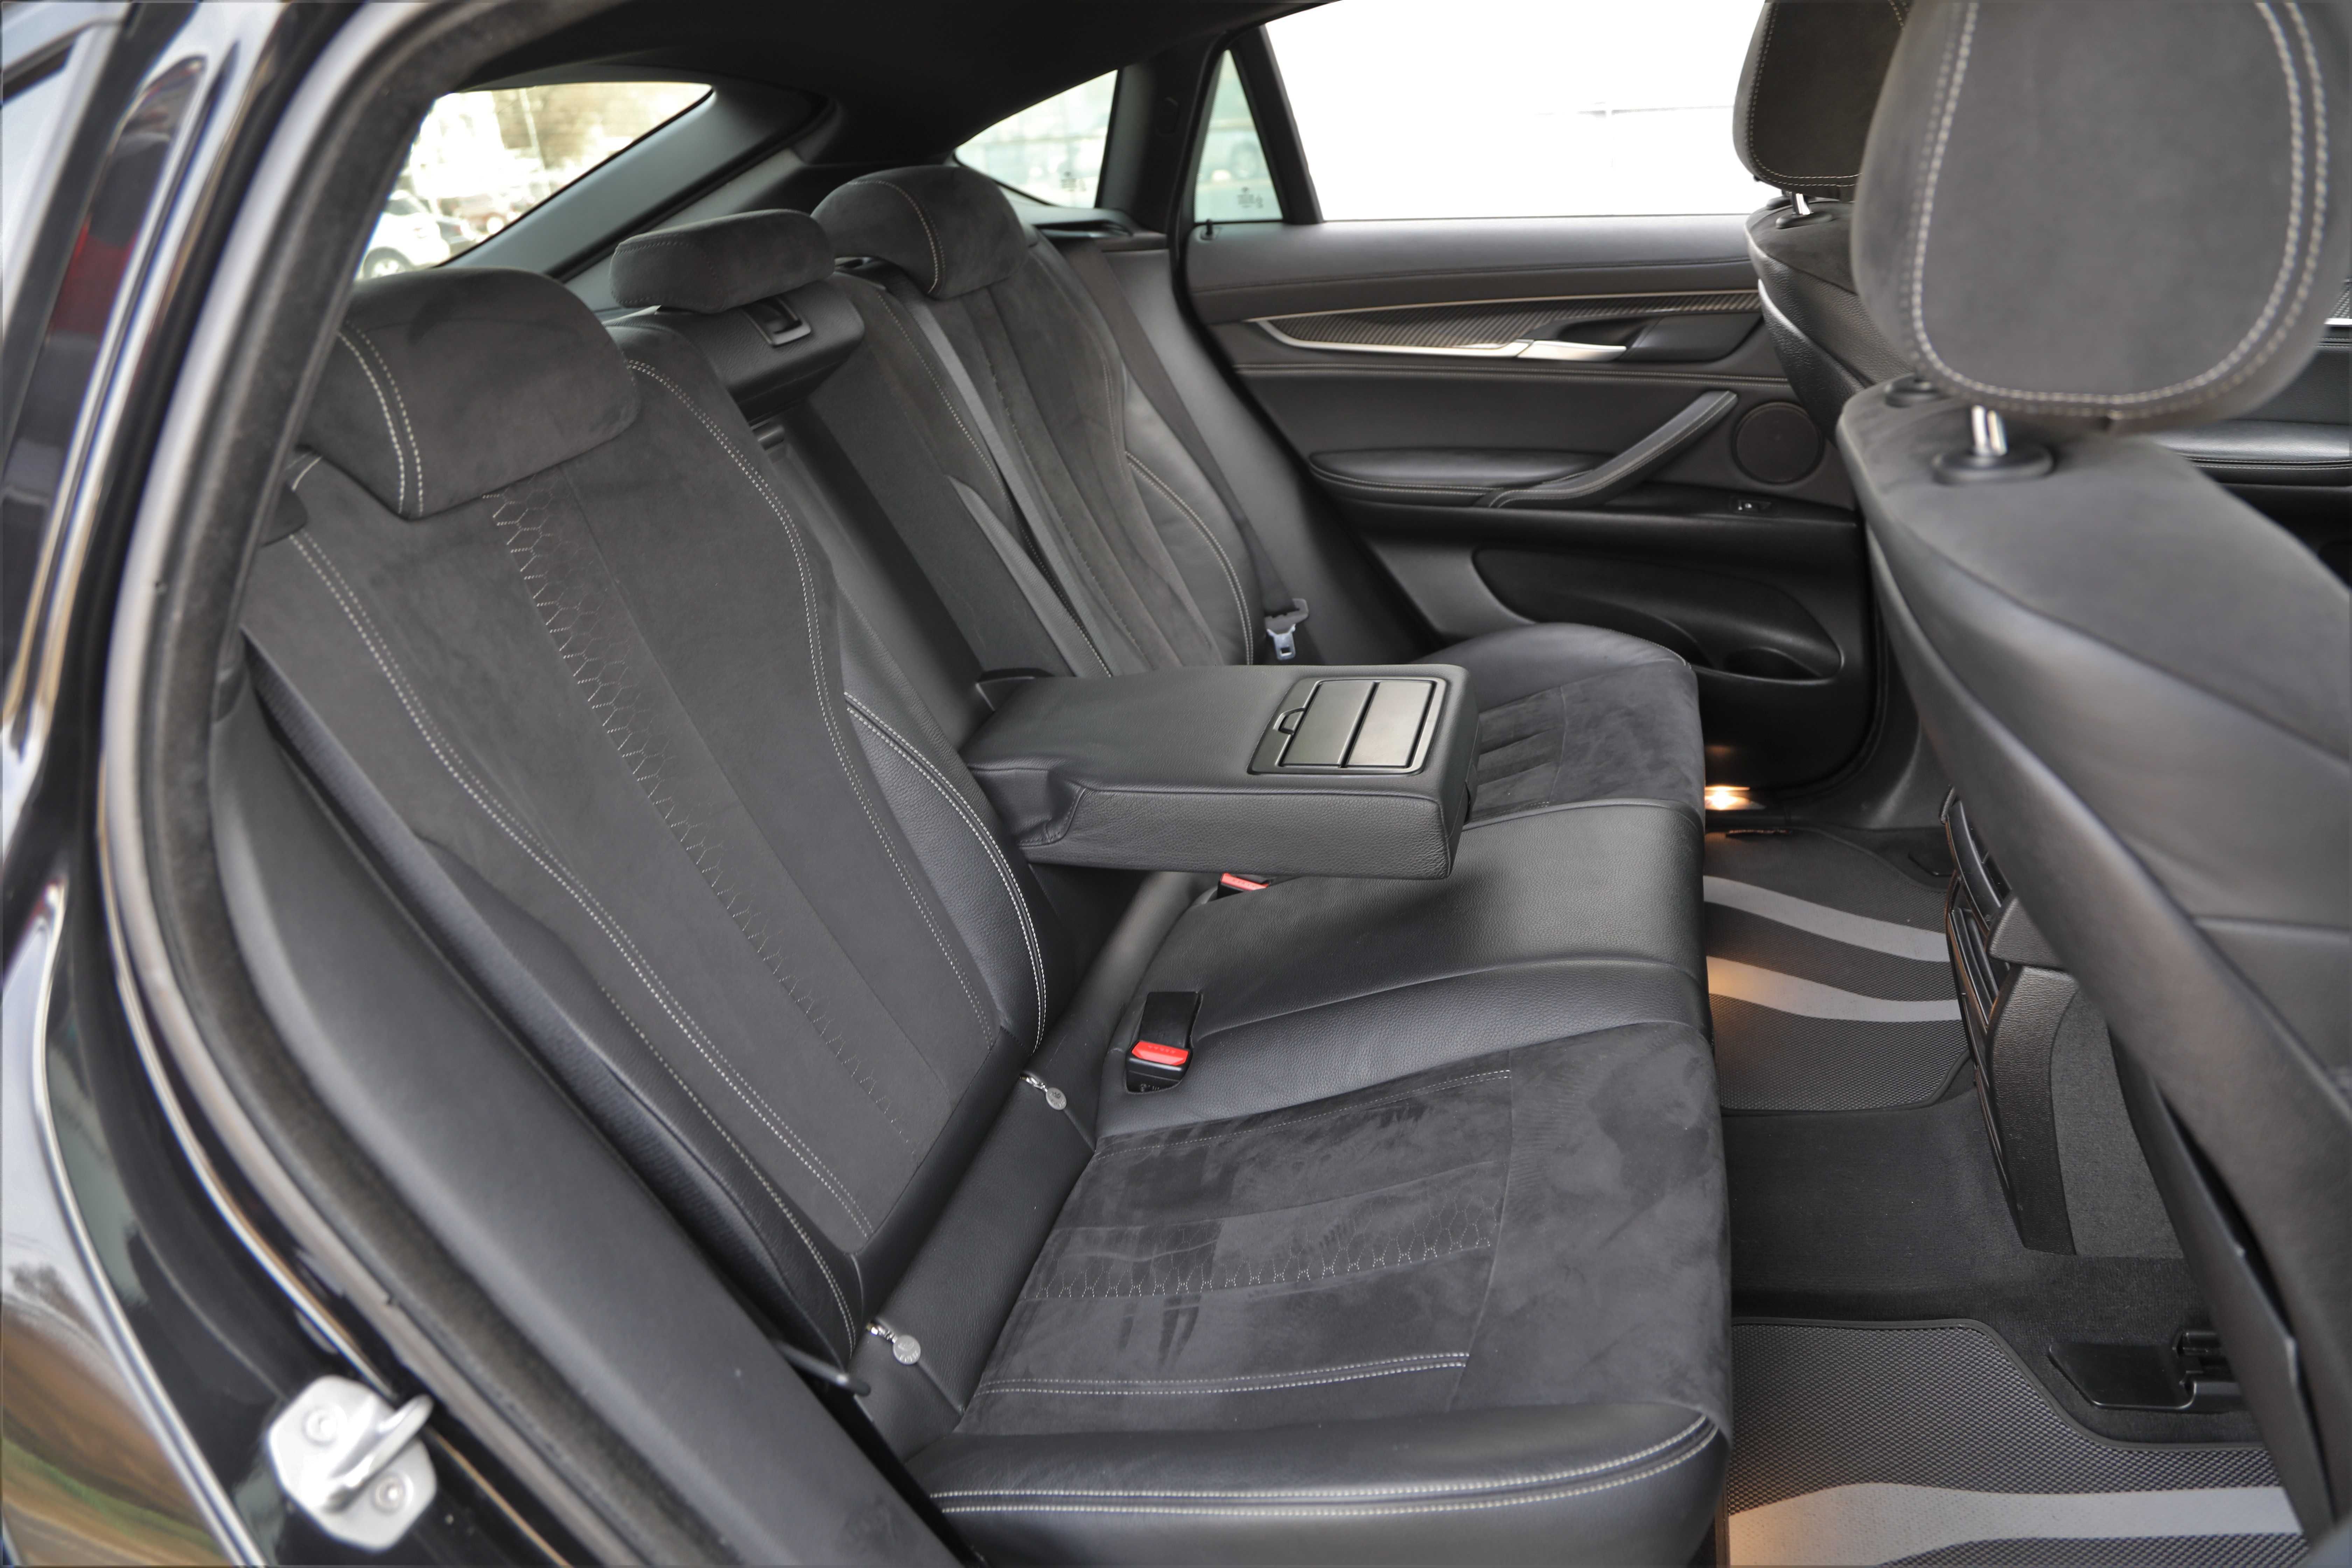 Офіційний BMW X6 М50d 2015 року